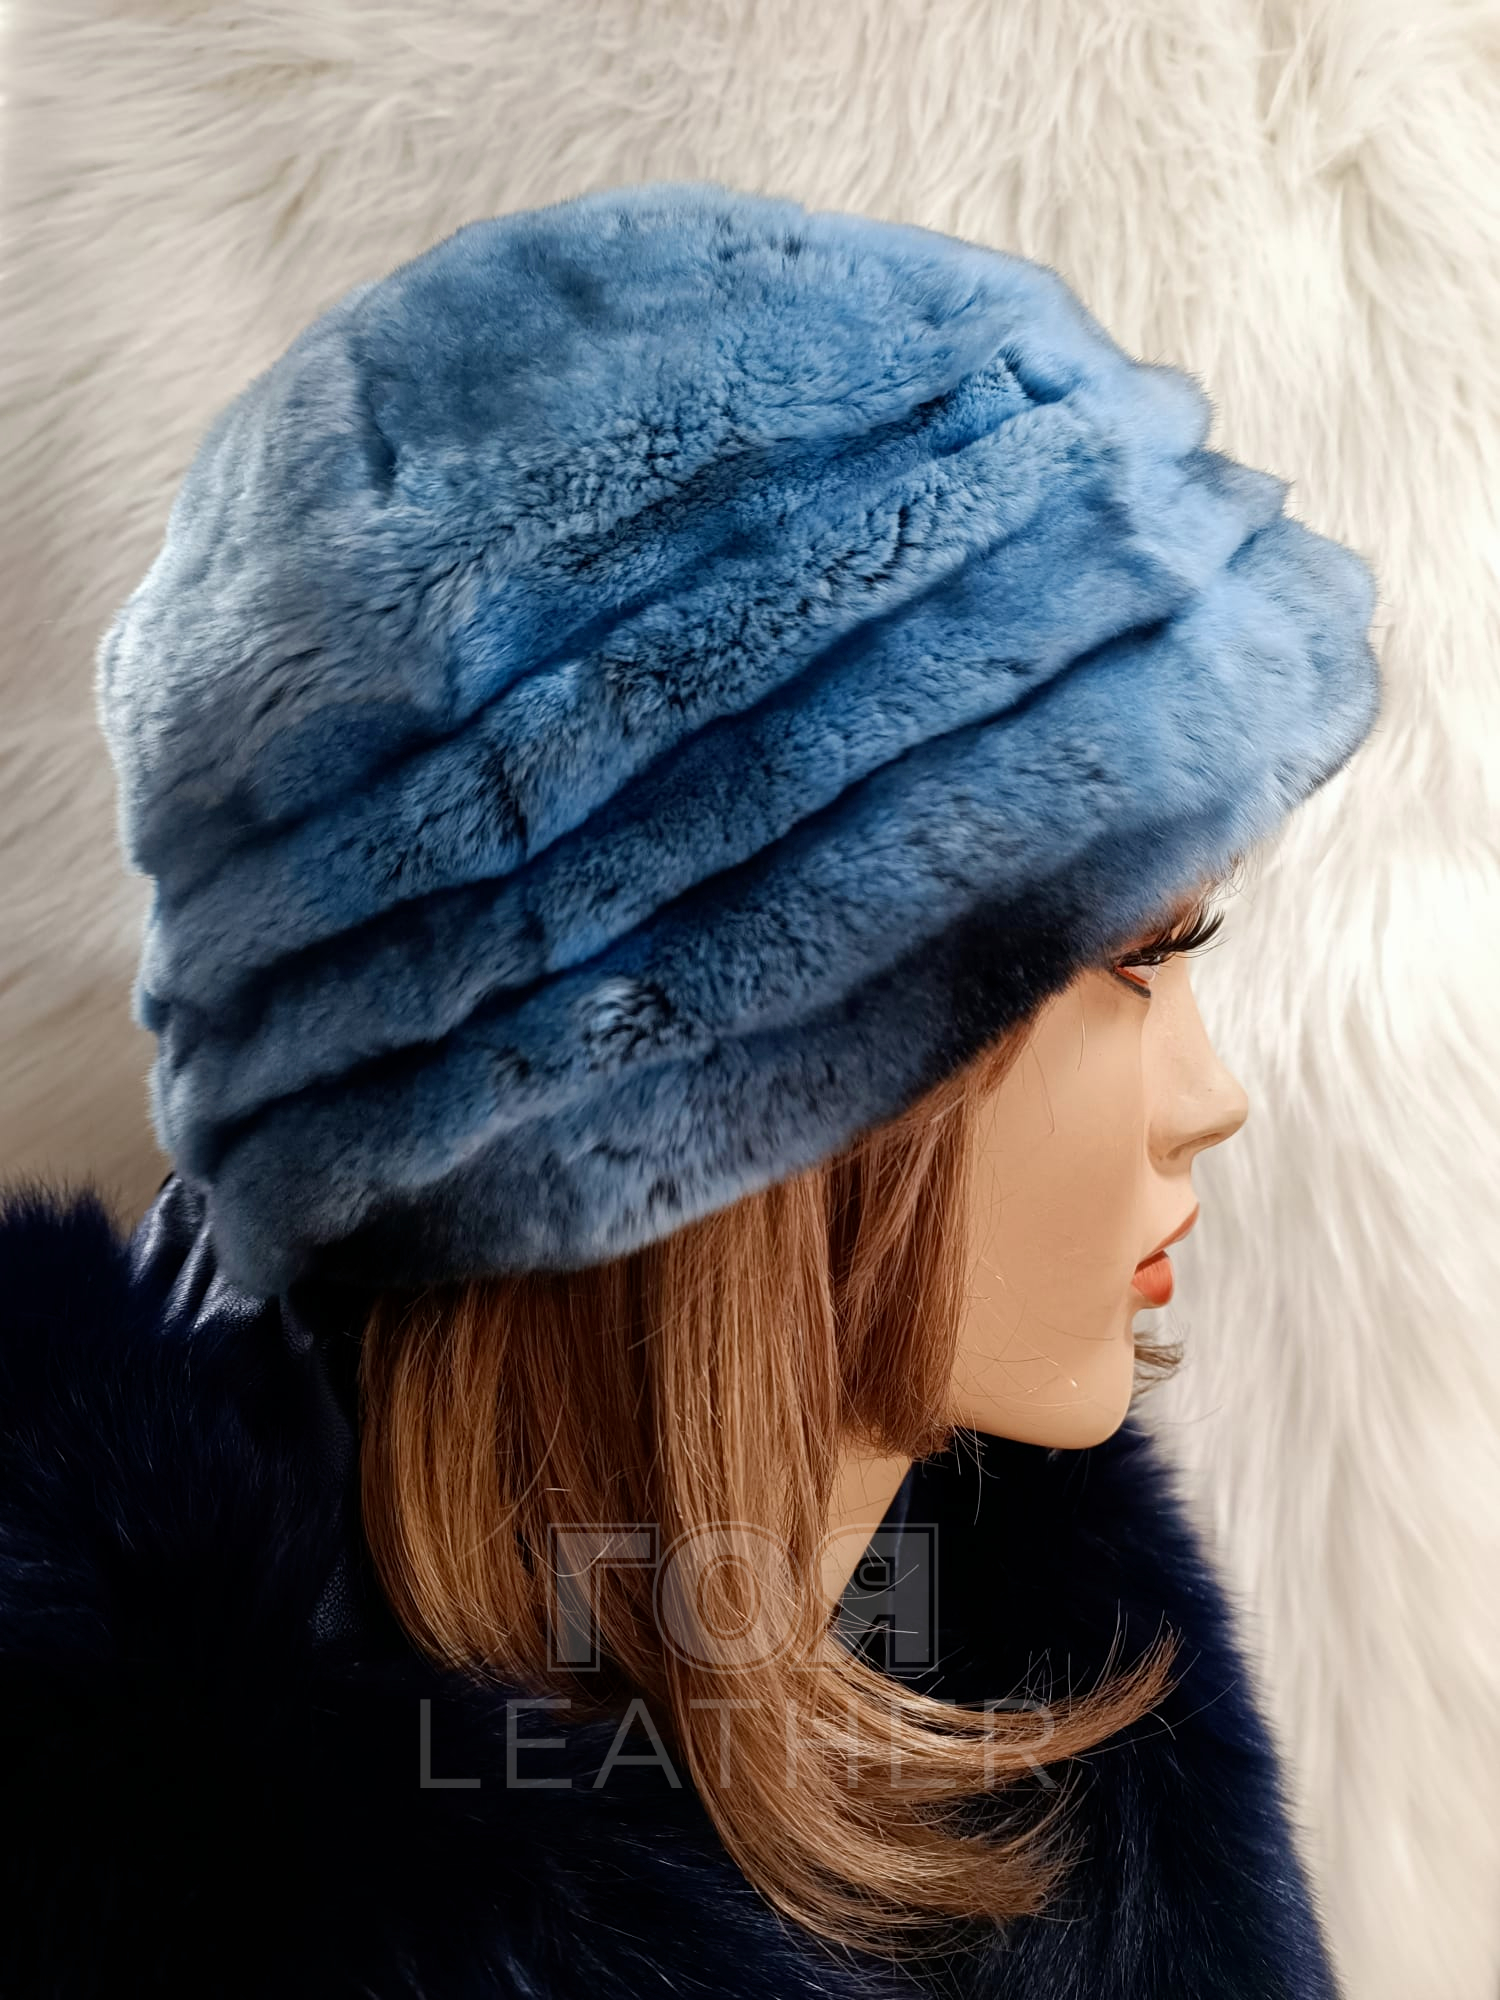 Дамска зимна кожена шапка от ГОЯ Leather. Моделът е изработен от 100% естествена кожа рекс-чинчила. Изключително лек и топъл, подходящ за студени зимни дни. От вътрешната част има шнур за пристягане и коригиране на размера.